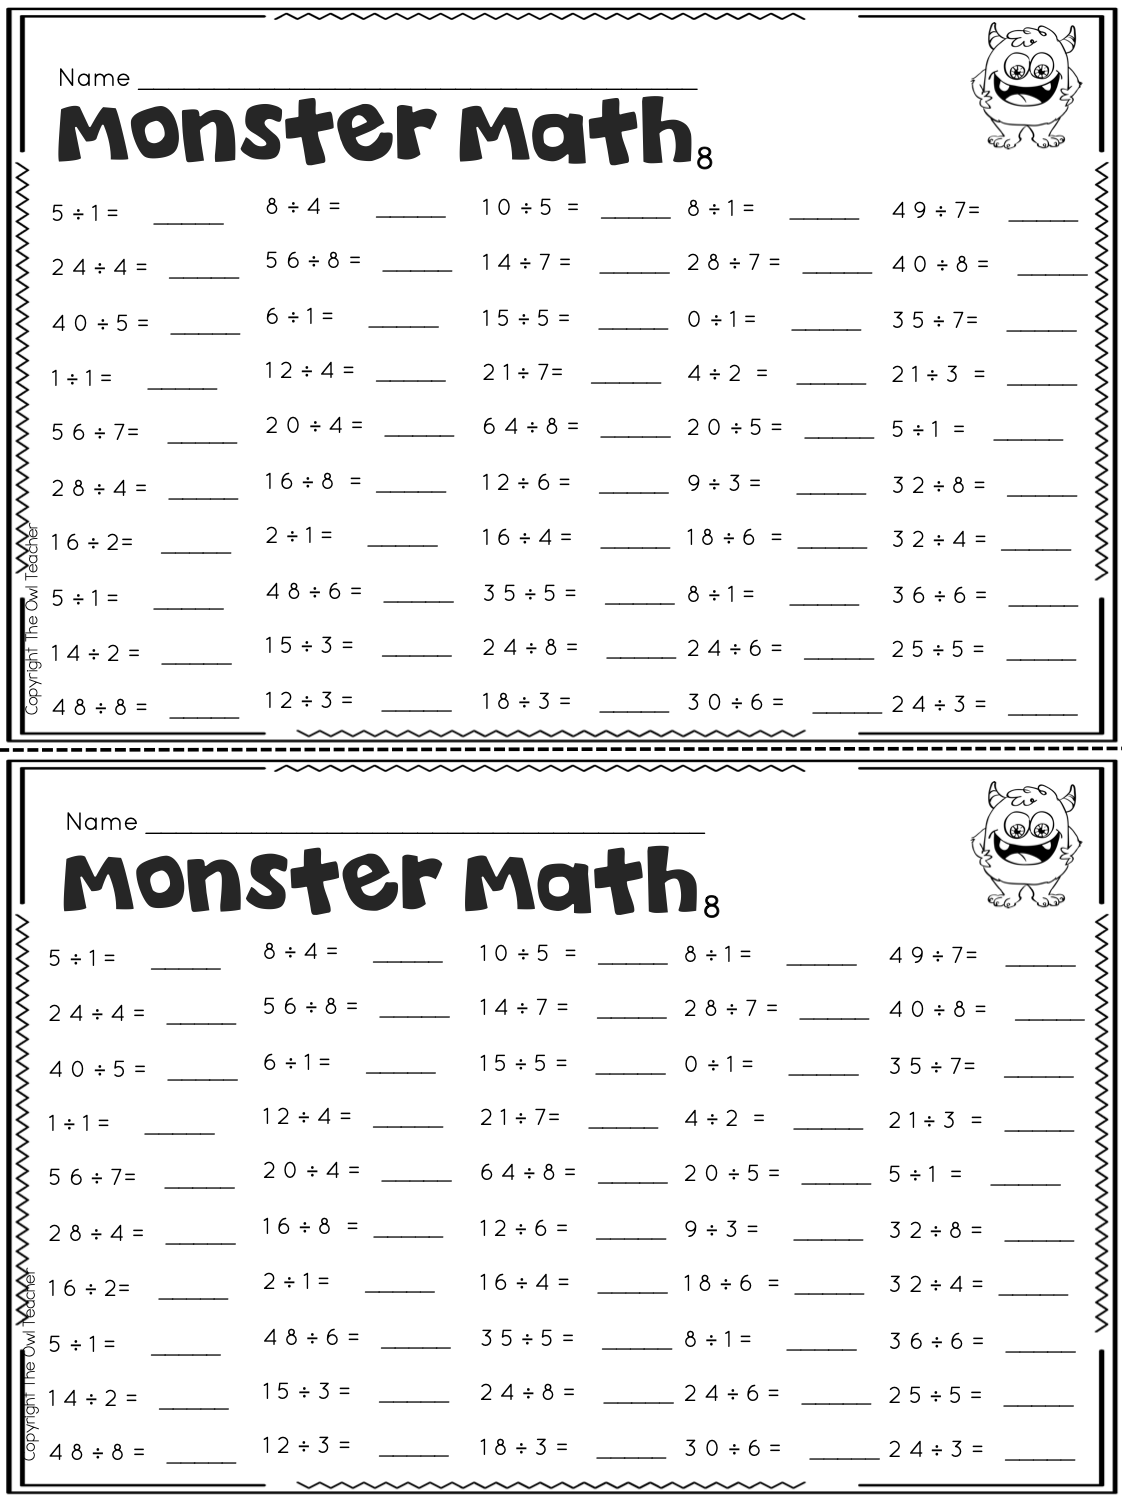 Multiplication Fluency Worksheets Pdf